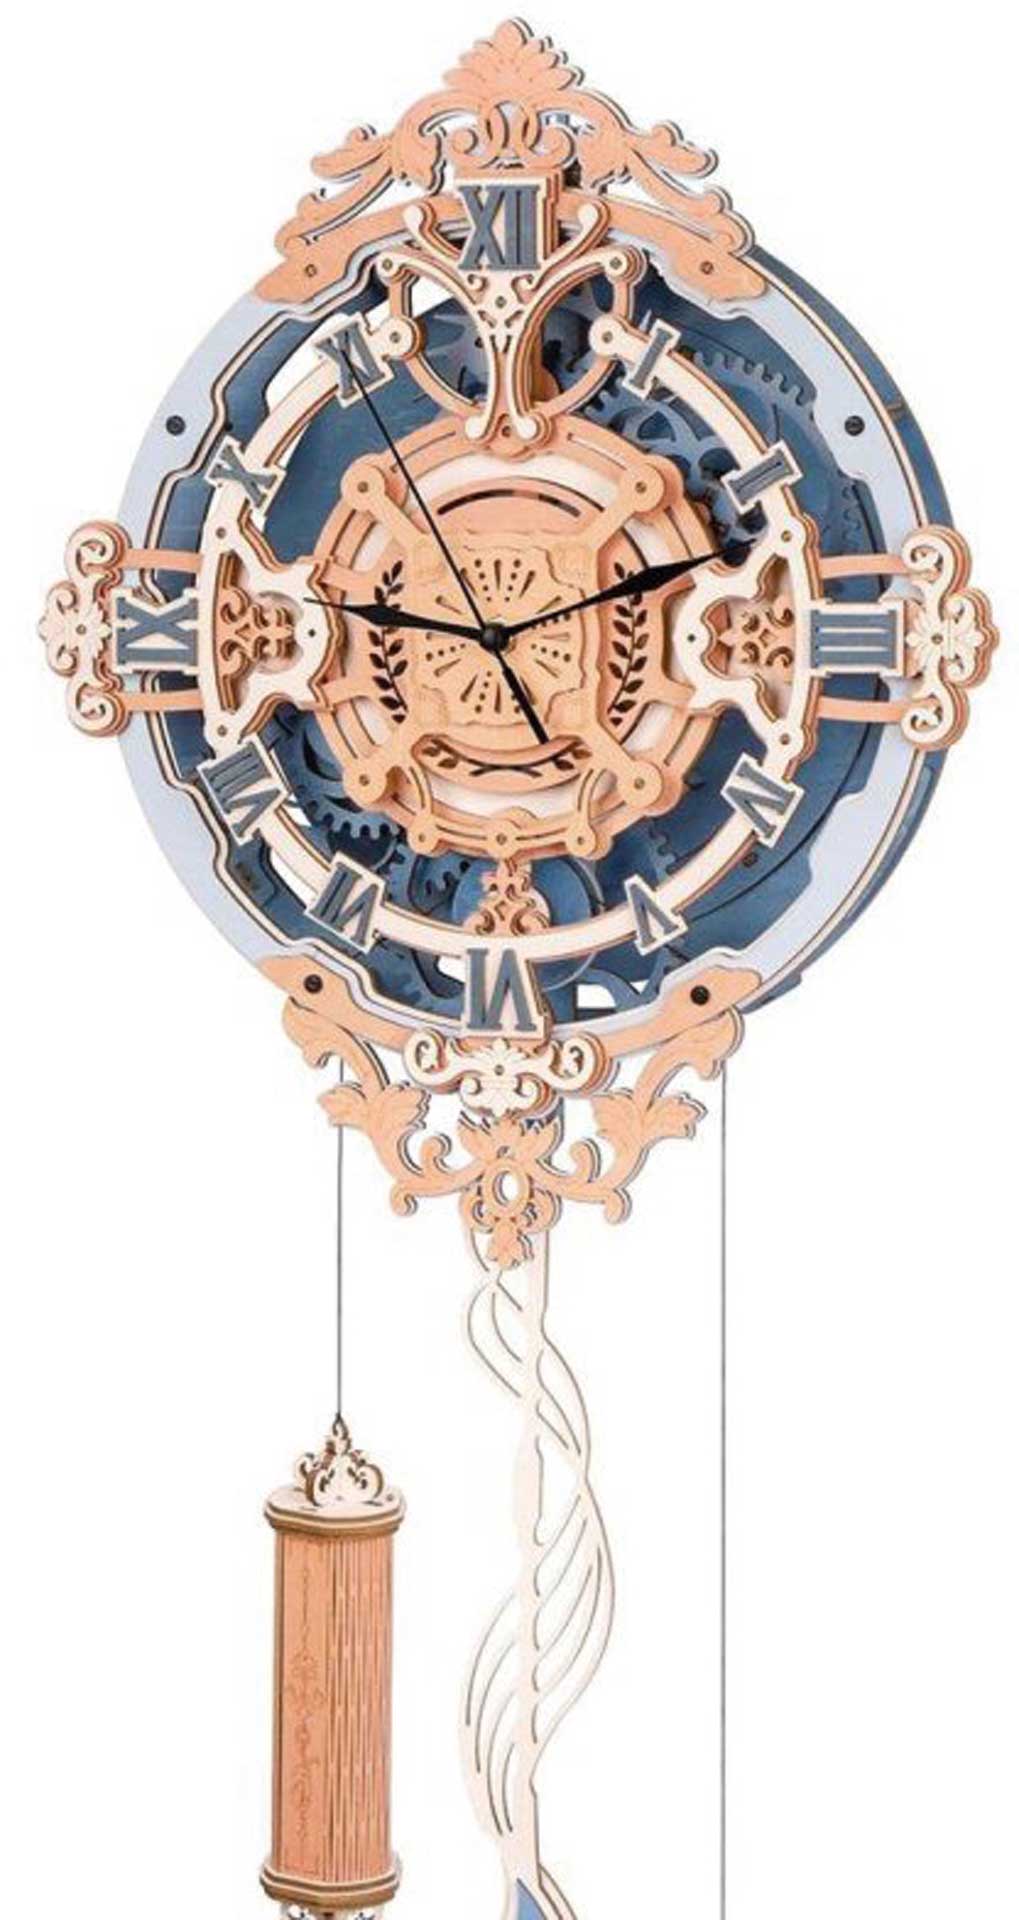 PICHLER Horloge murale romantique (Lasercut Kit de construction en bois)